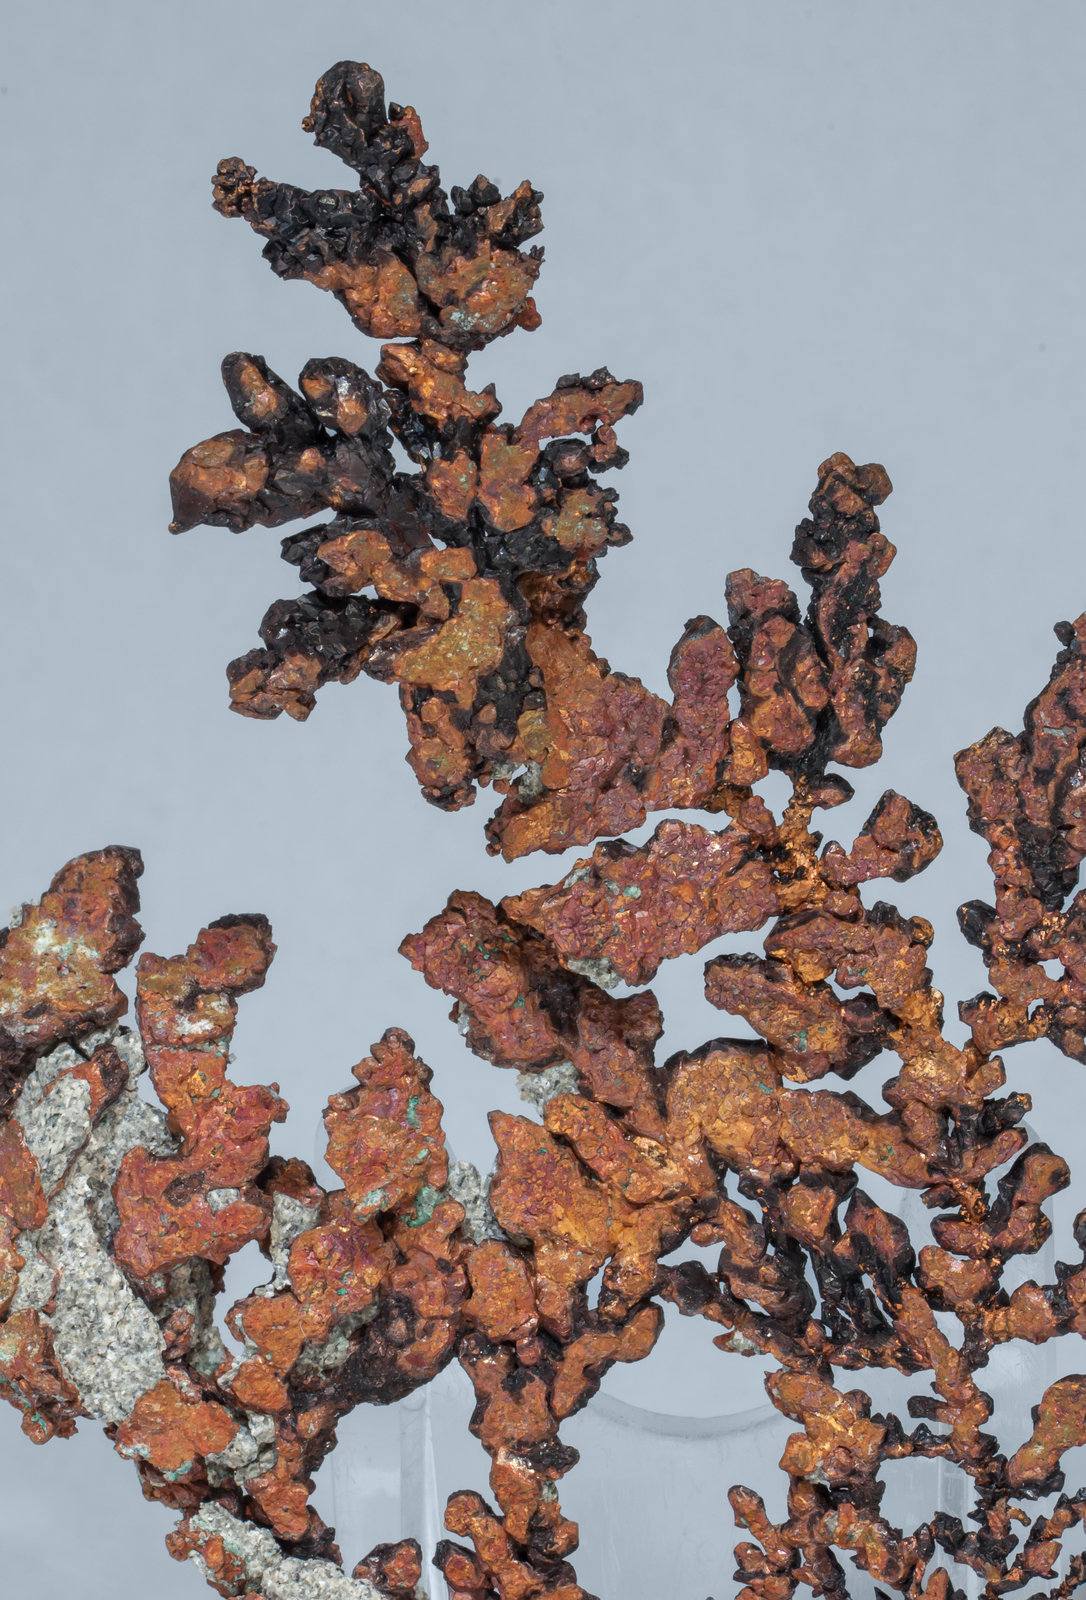 specimens/s_imagesAF8/Copper-TG56AF8d.jpg